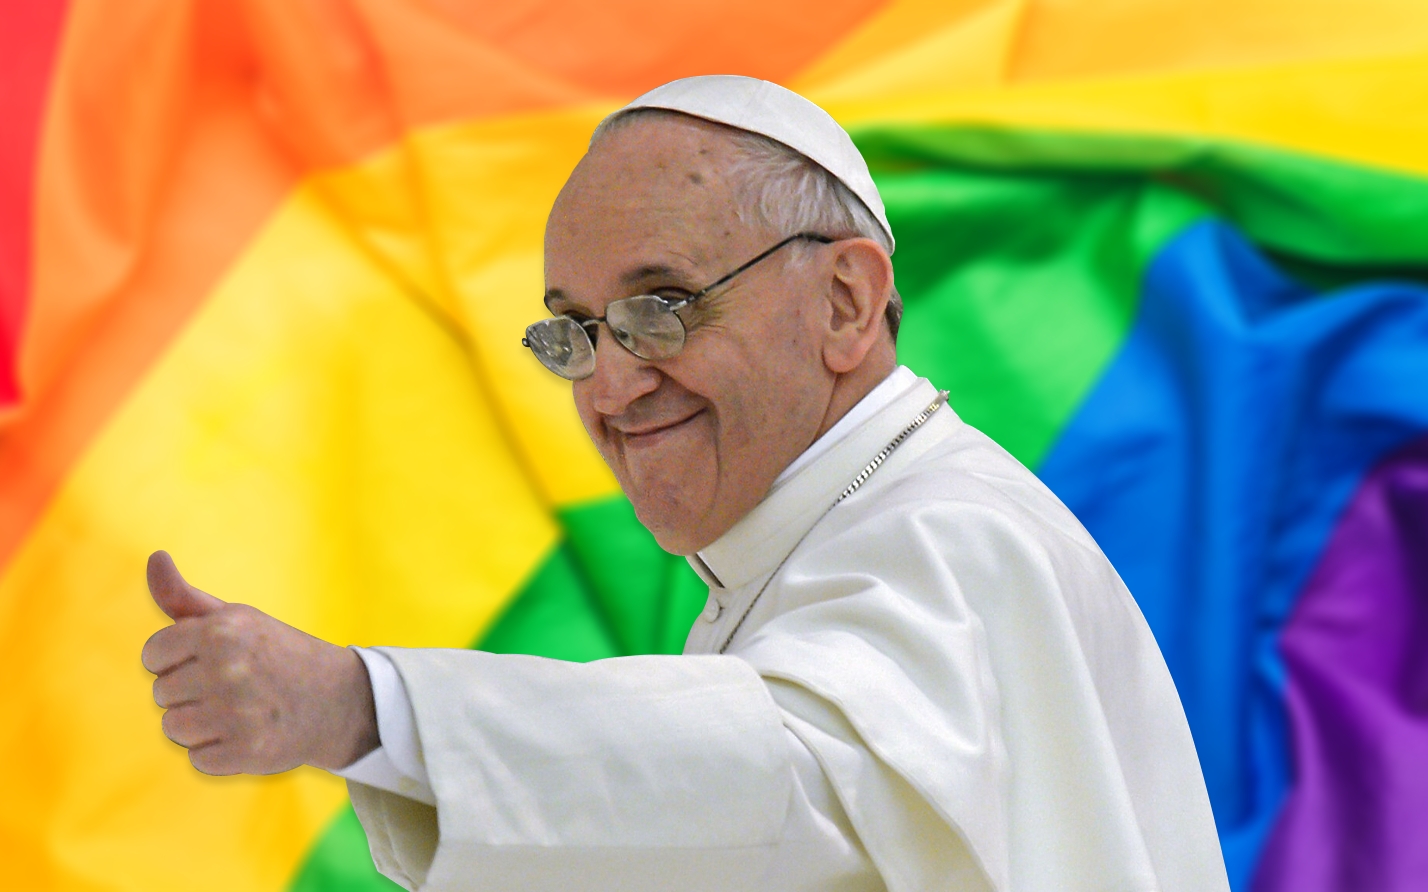 Папа Римський підтримав ЛГБТ-союзи. Про що мова?